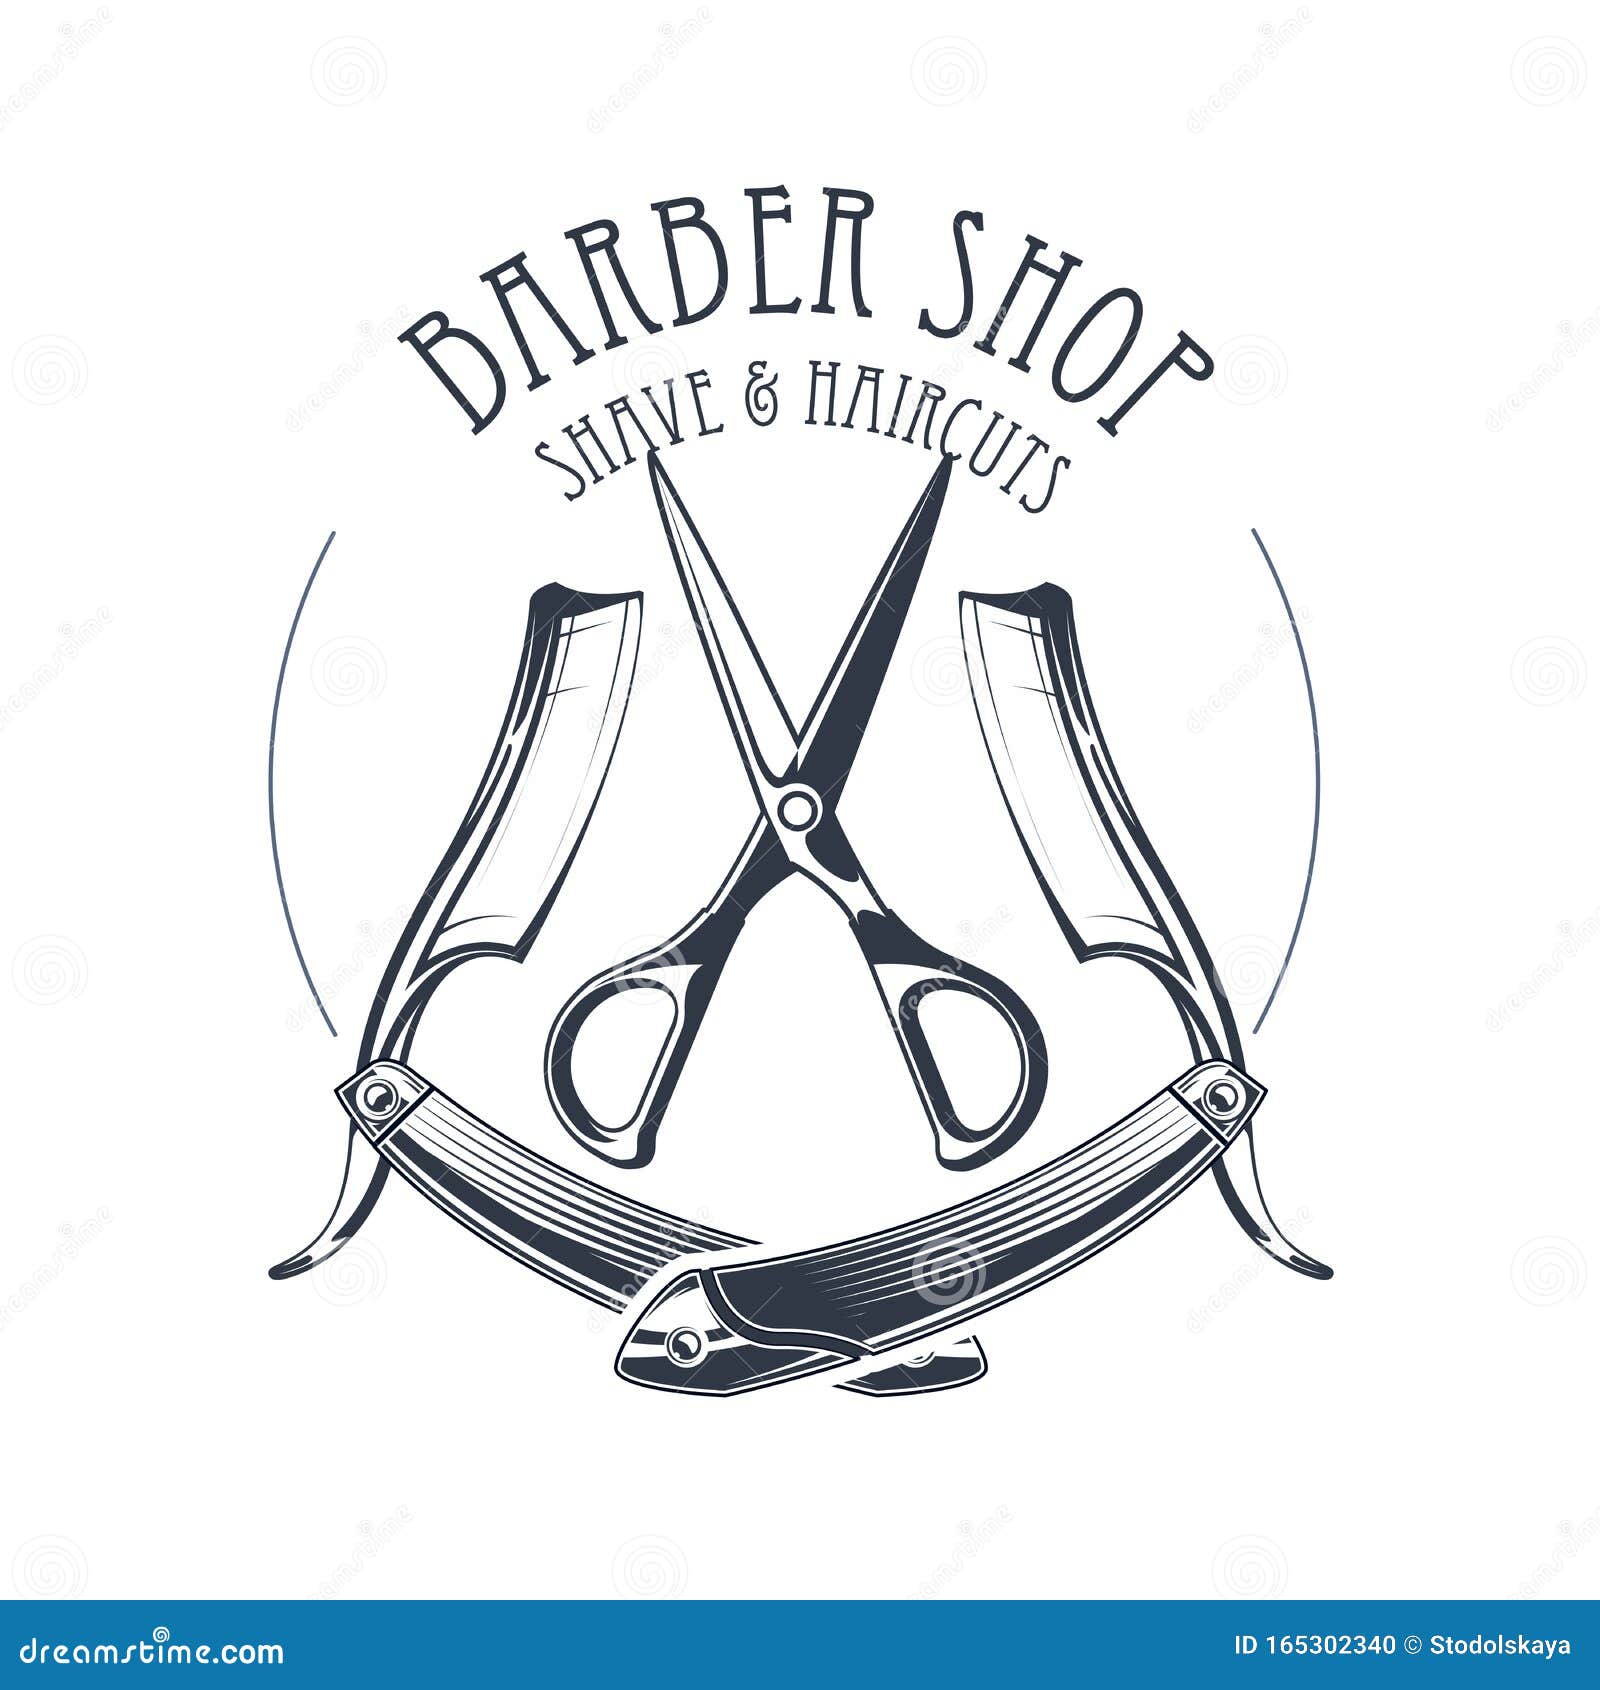 vintage barbershop or hairdressing salon emblem, scissors and straight razor, barber shop logo